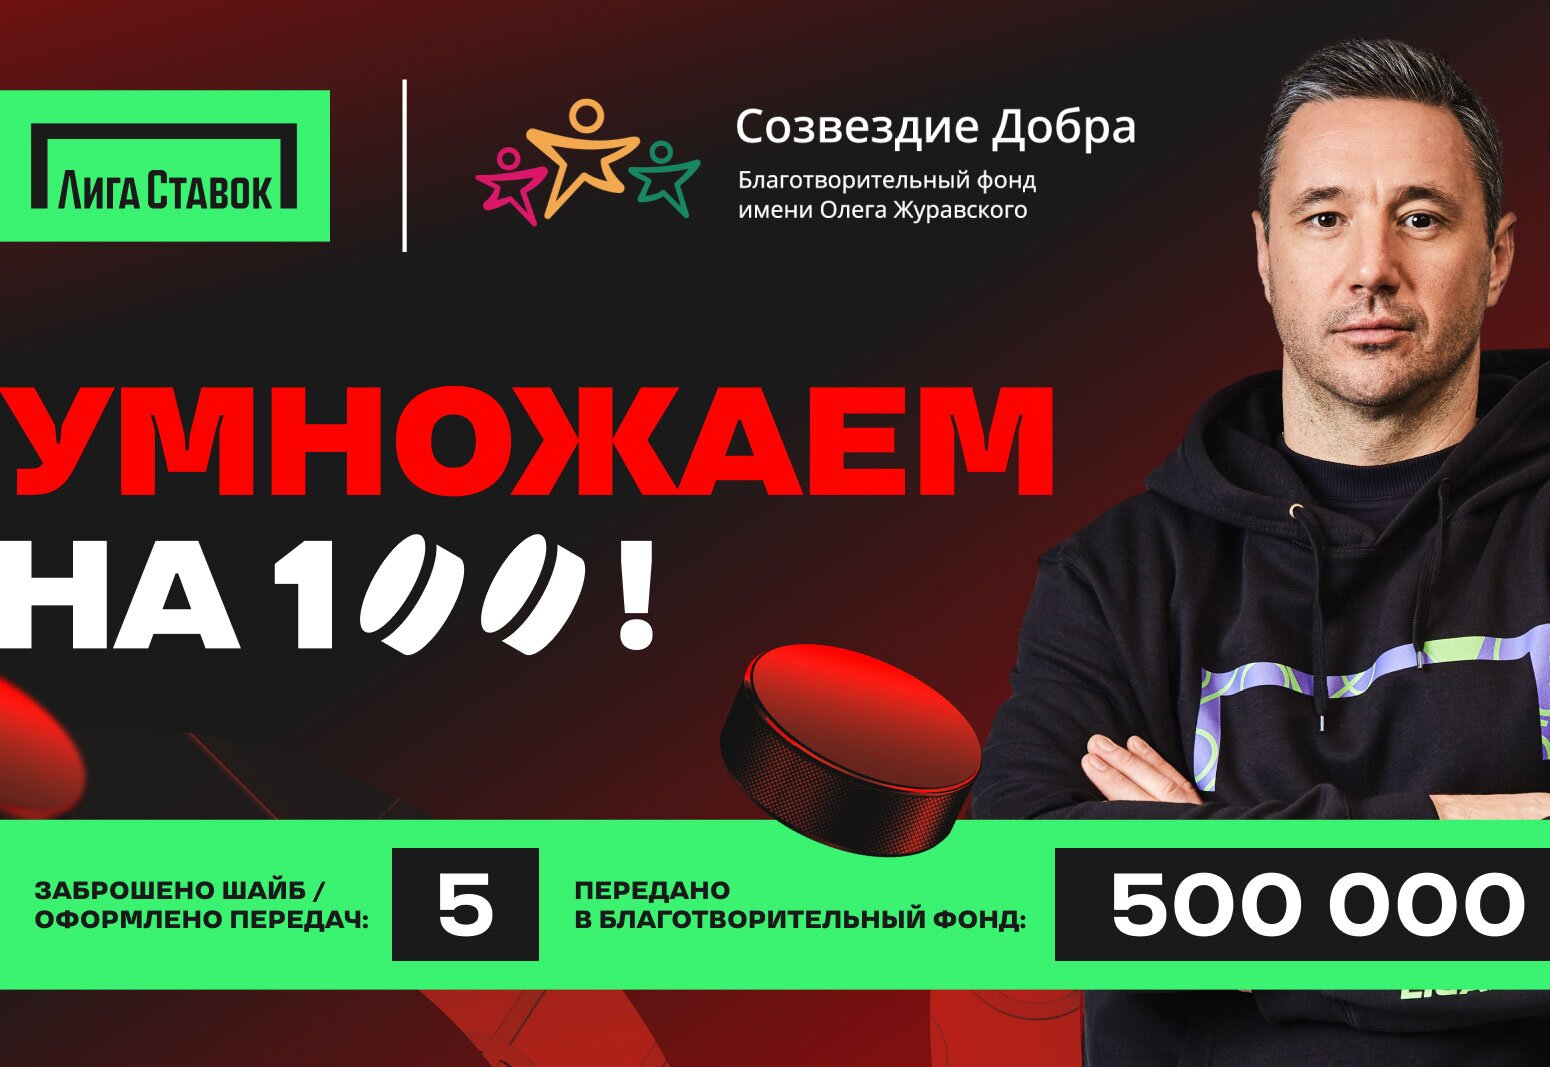 500 000 рублей уже в копилке Фонда Созвездие Добра в рамках акции Умножаем на 100!